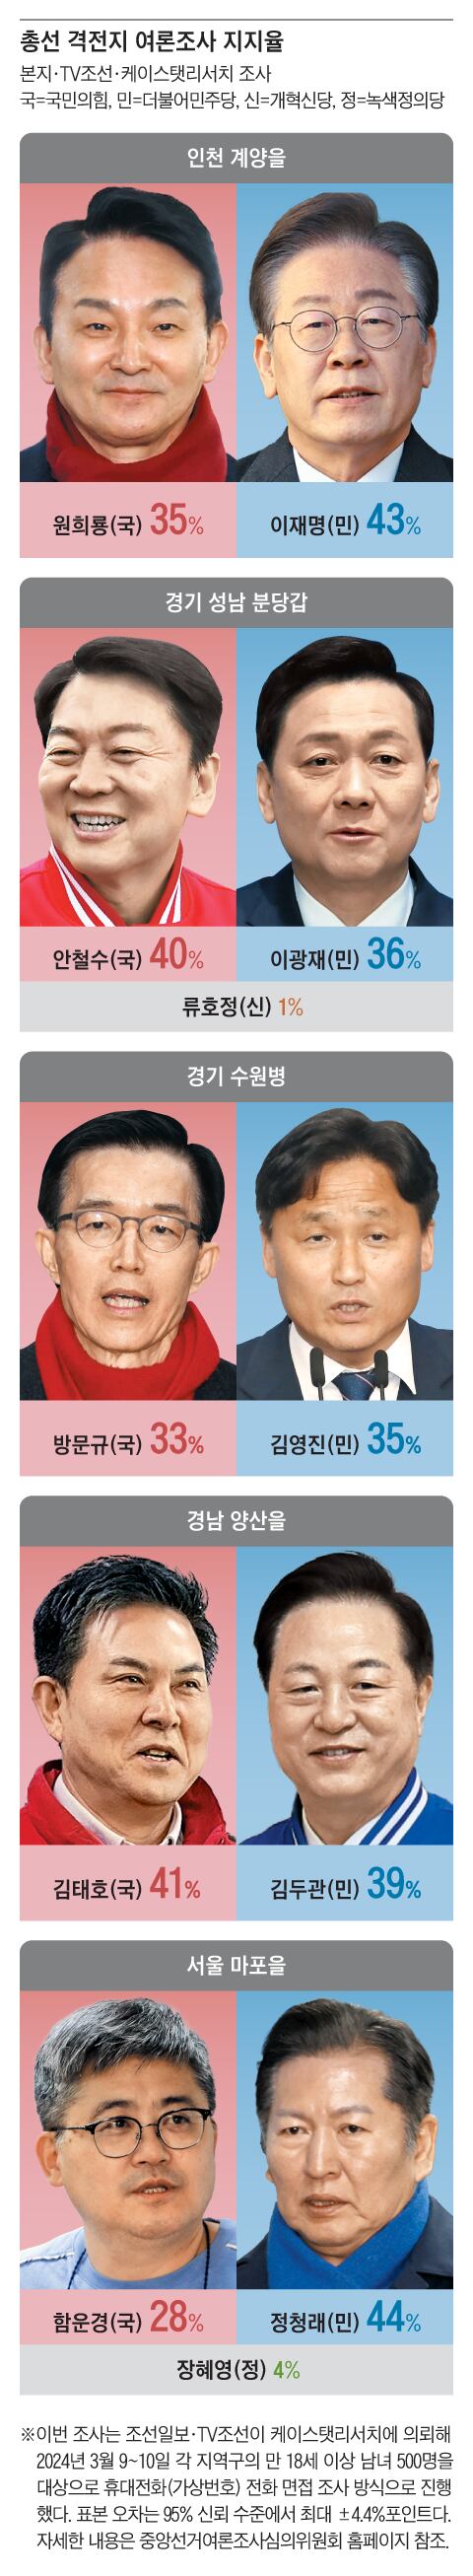 경기 성남 분당갑, 안철수 40% vs 이광재 36%